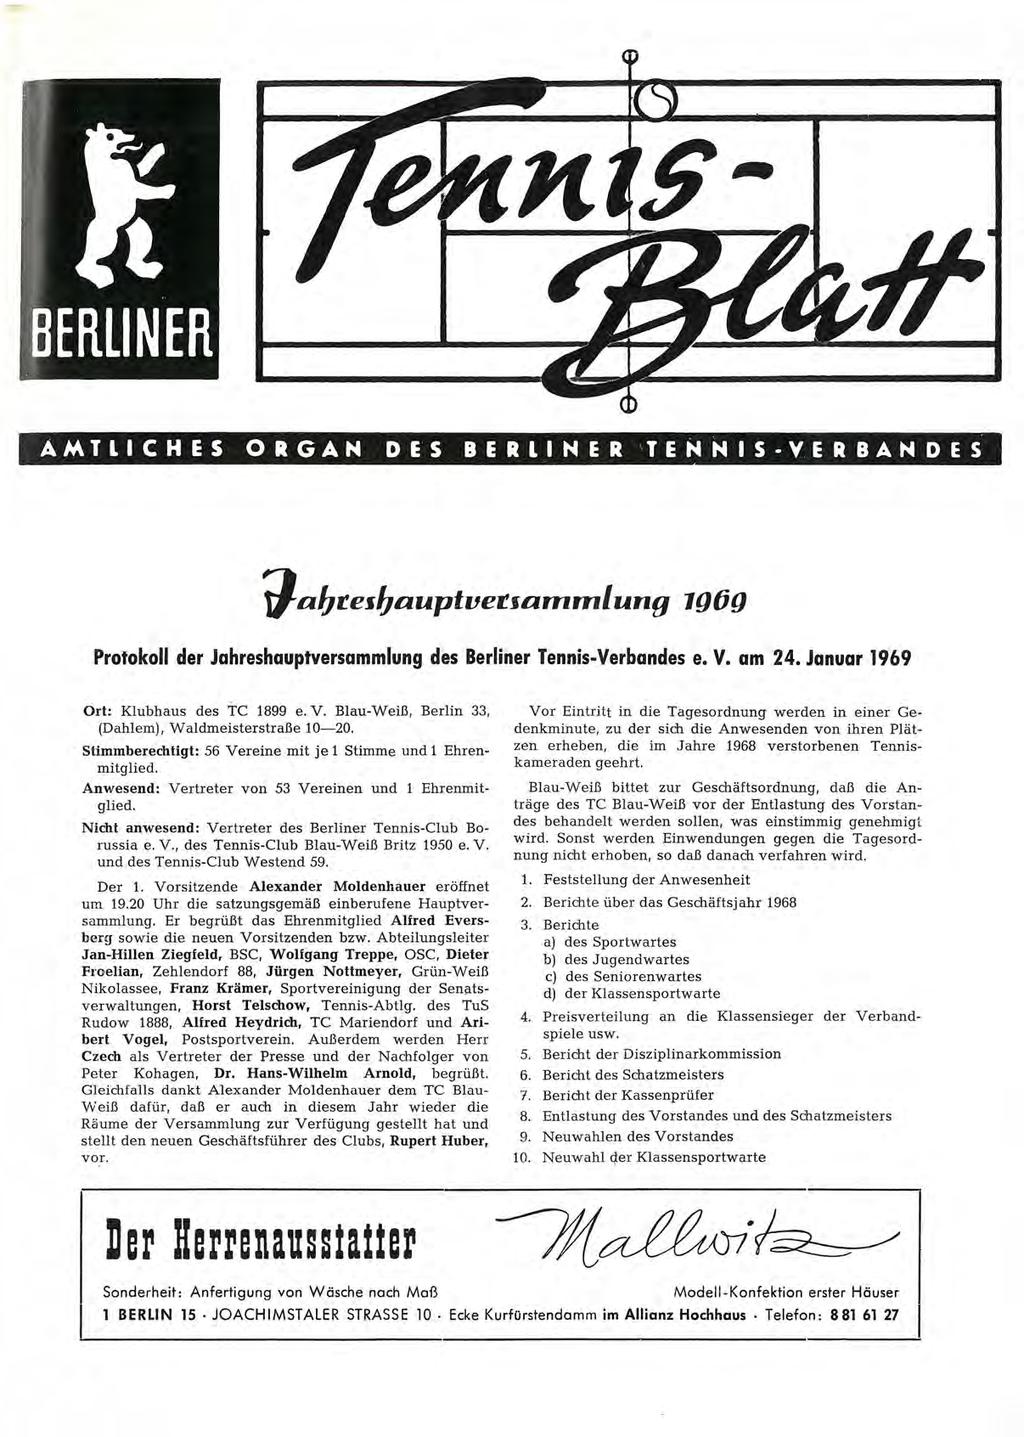 AMTLICHES ORGAN DES BERLINER TENNIS-VERBANDES Protokoll der Jahreshauptversammlung des Berliner Tennis-Verbandes e. V. am 24. Januar 1969 Ort: Klubhaus des TC 1899 e. V. Blau-Weiß, Berlin 33, (Dahlem).